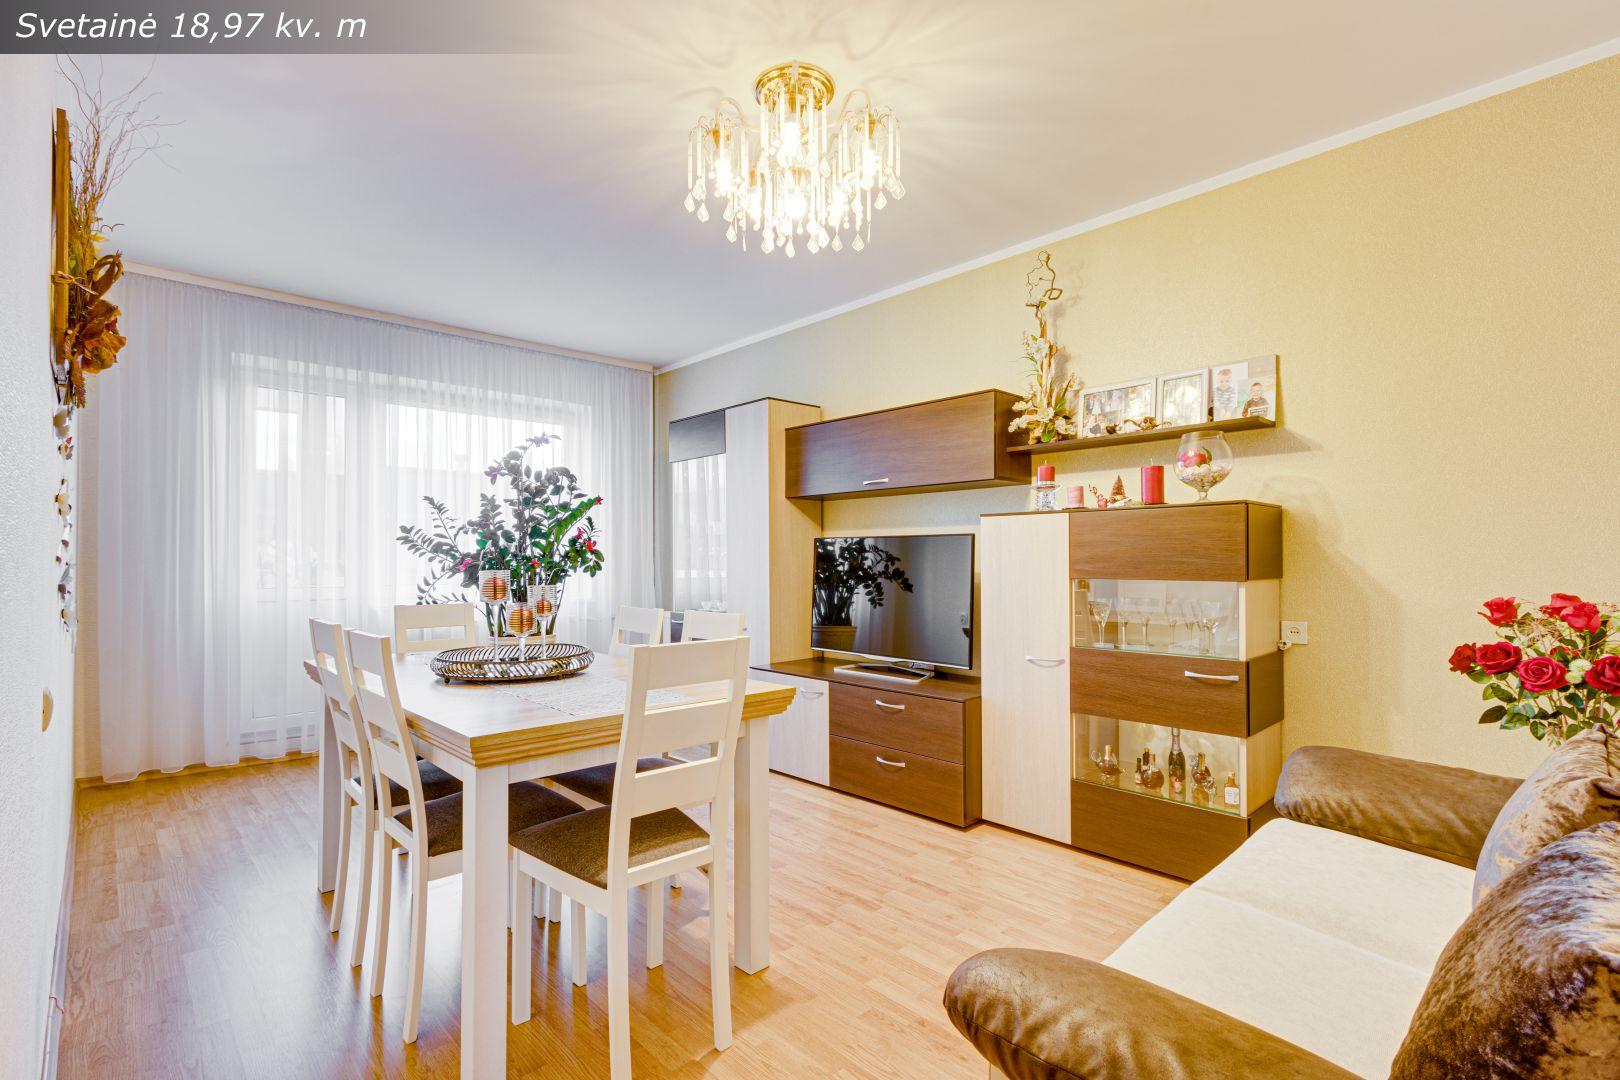 Parduodamas tvarkingas, erdvus ir šviesus 3 kambarių su holu butas Savanorių g., Kretingoje.